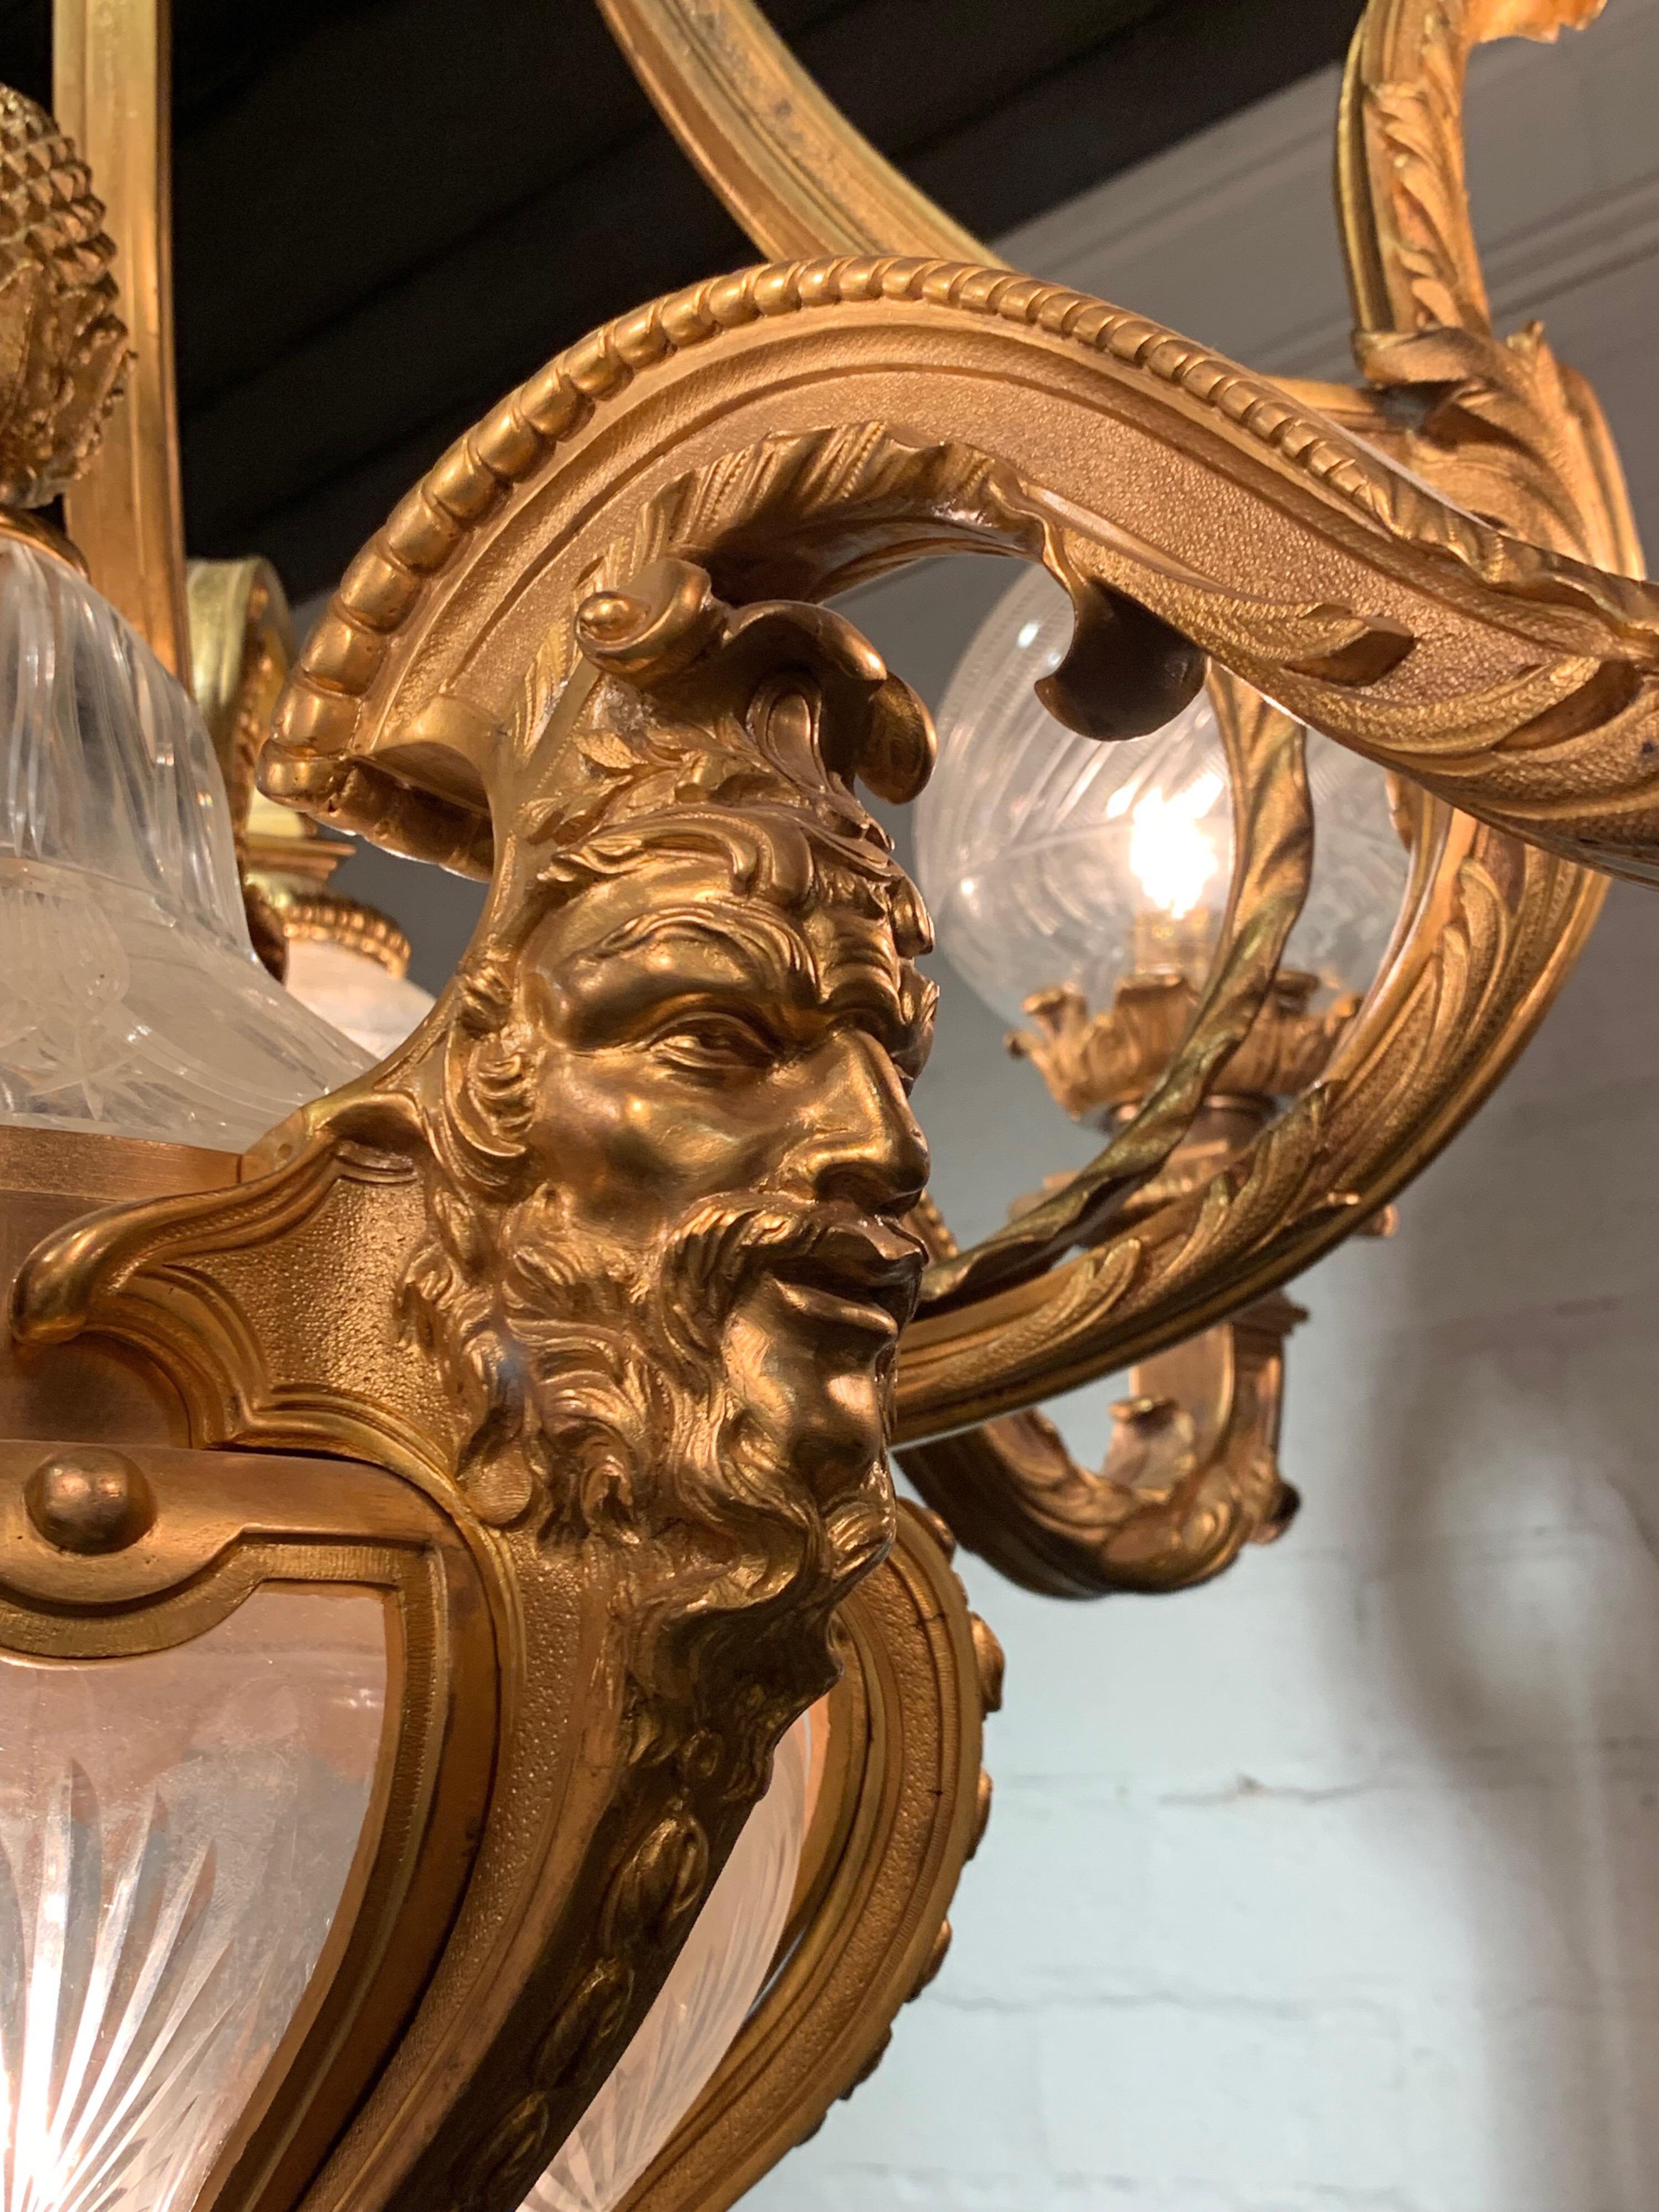 Außergewöhnlicher französischer Belle-Époque-Kronleuchter aus vergoldeter Bronze des 19. Jahrhunderts mit 10 Lichtern. Beachten Sie die erstaunlichen Details, darunter das Gesicht eines Mannes auf dem Sockel der Halterung. Auch schöne geätzte